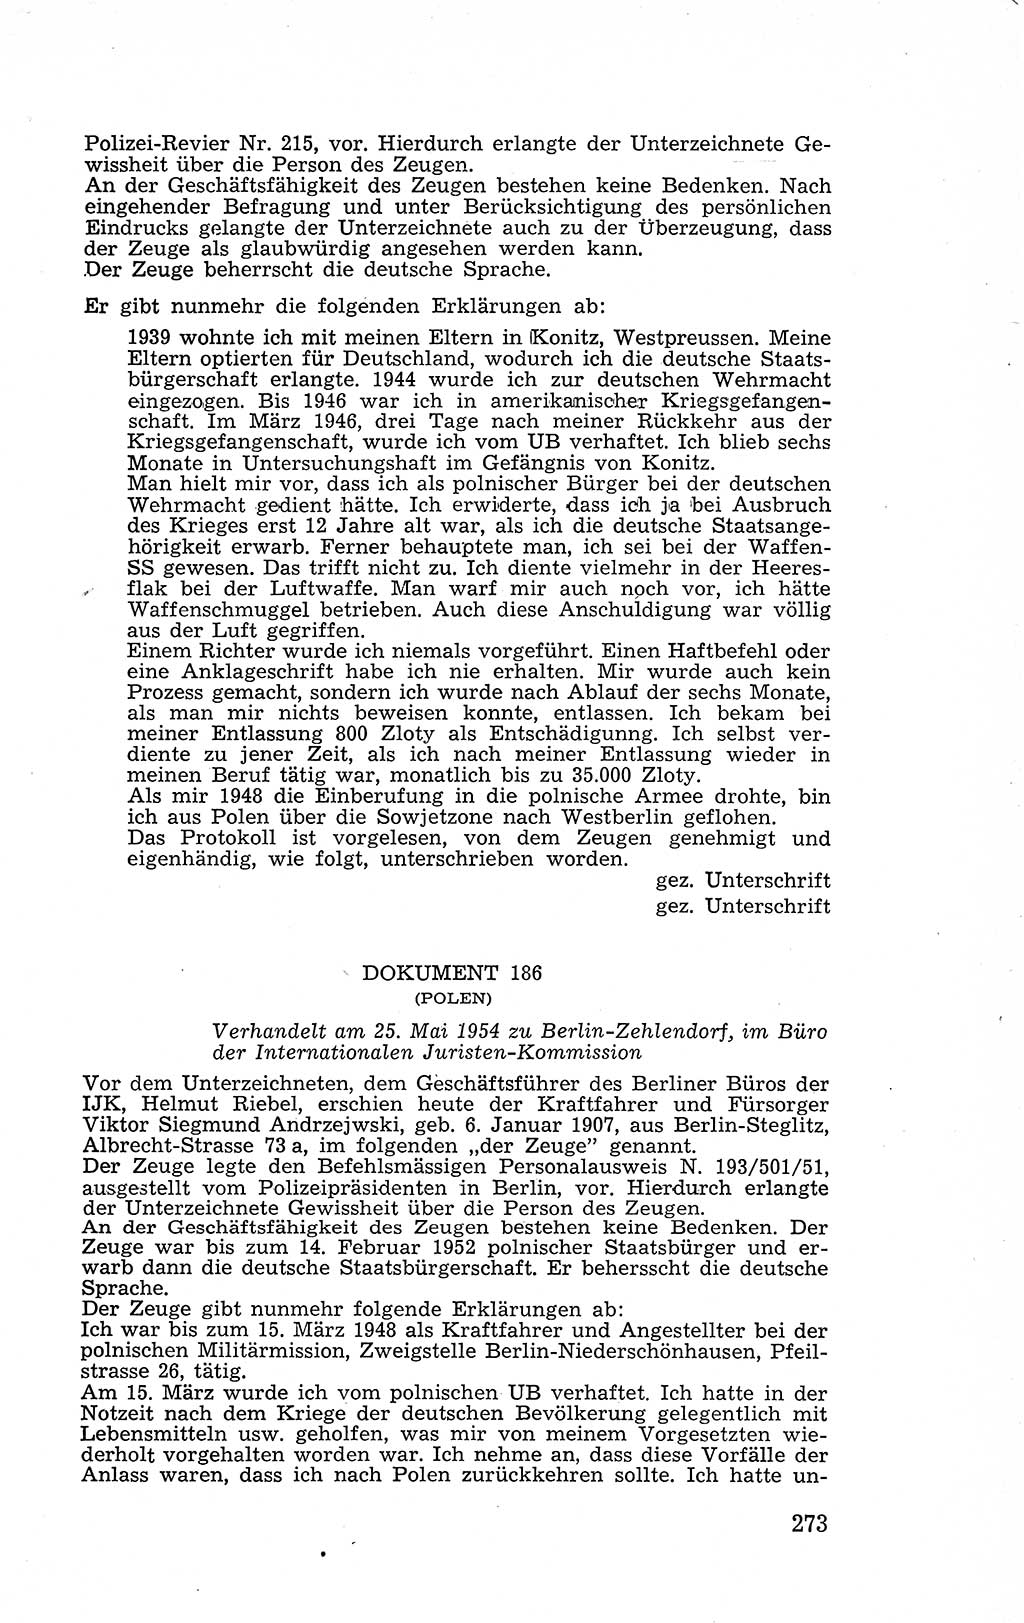 Recht in Fesseln, Dokumente, Internationale Juristen-Kommission [Bundesrepublik Deutschland (BRD)] 1955, Seite 273 (R. Dok. IJK BRD 1955, S. 273)